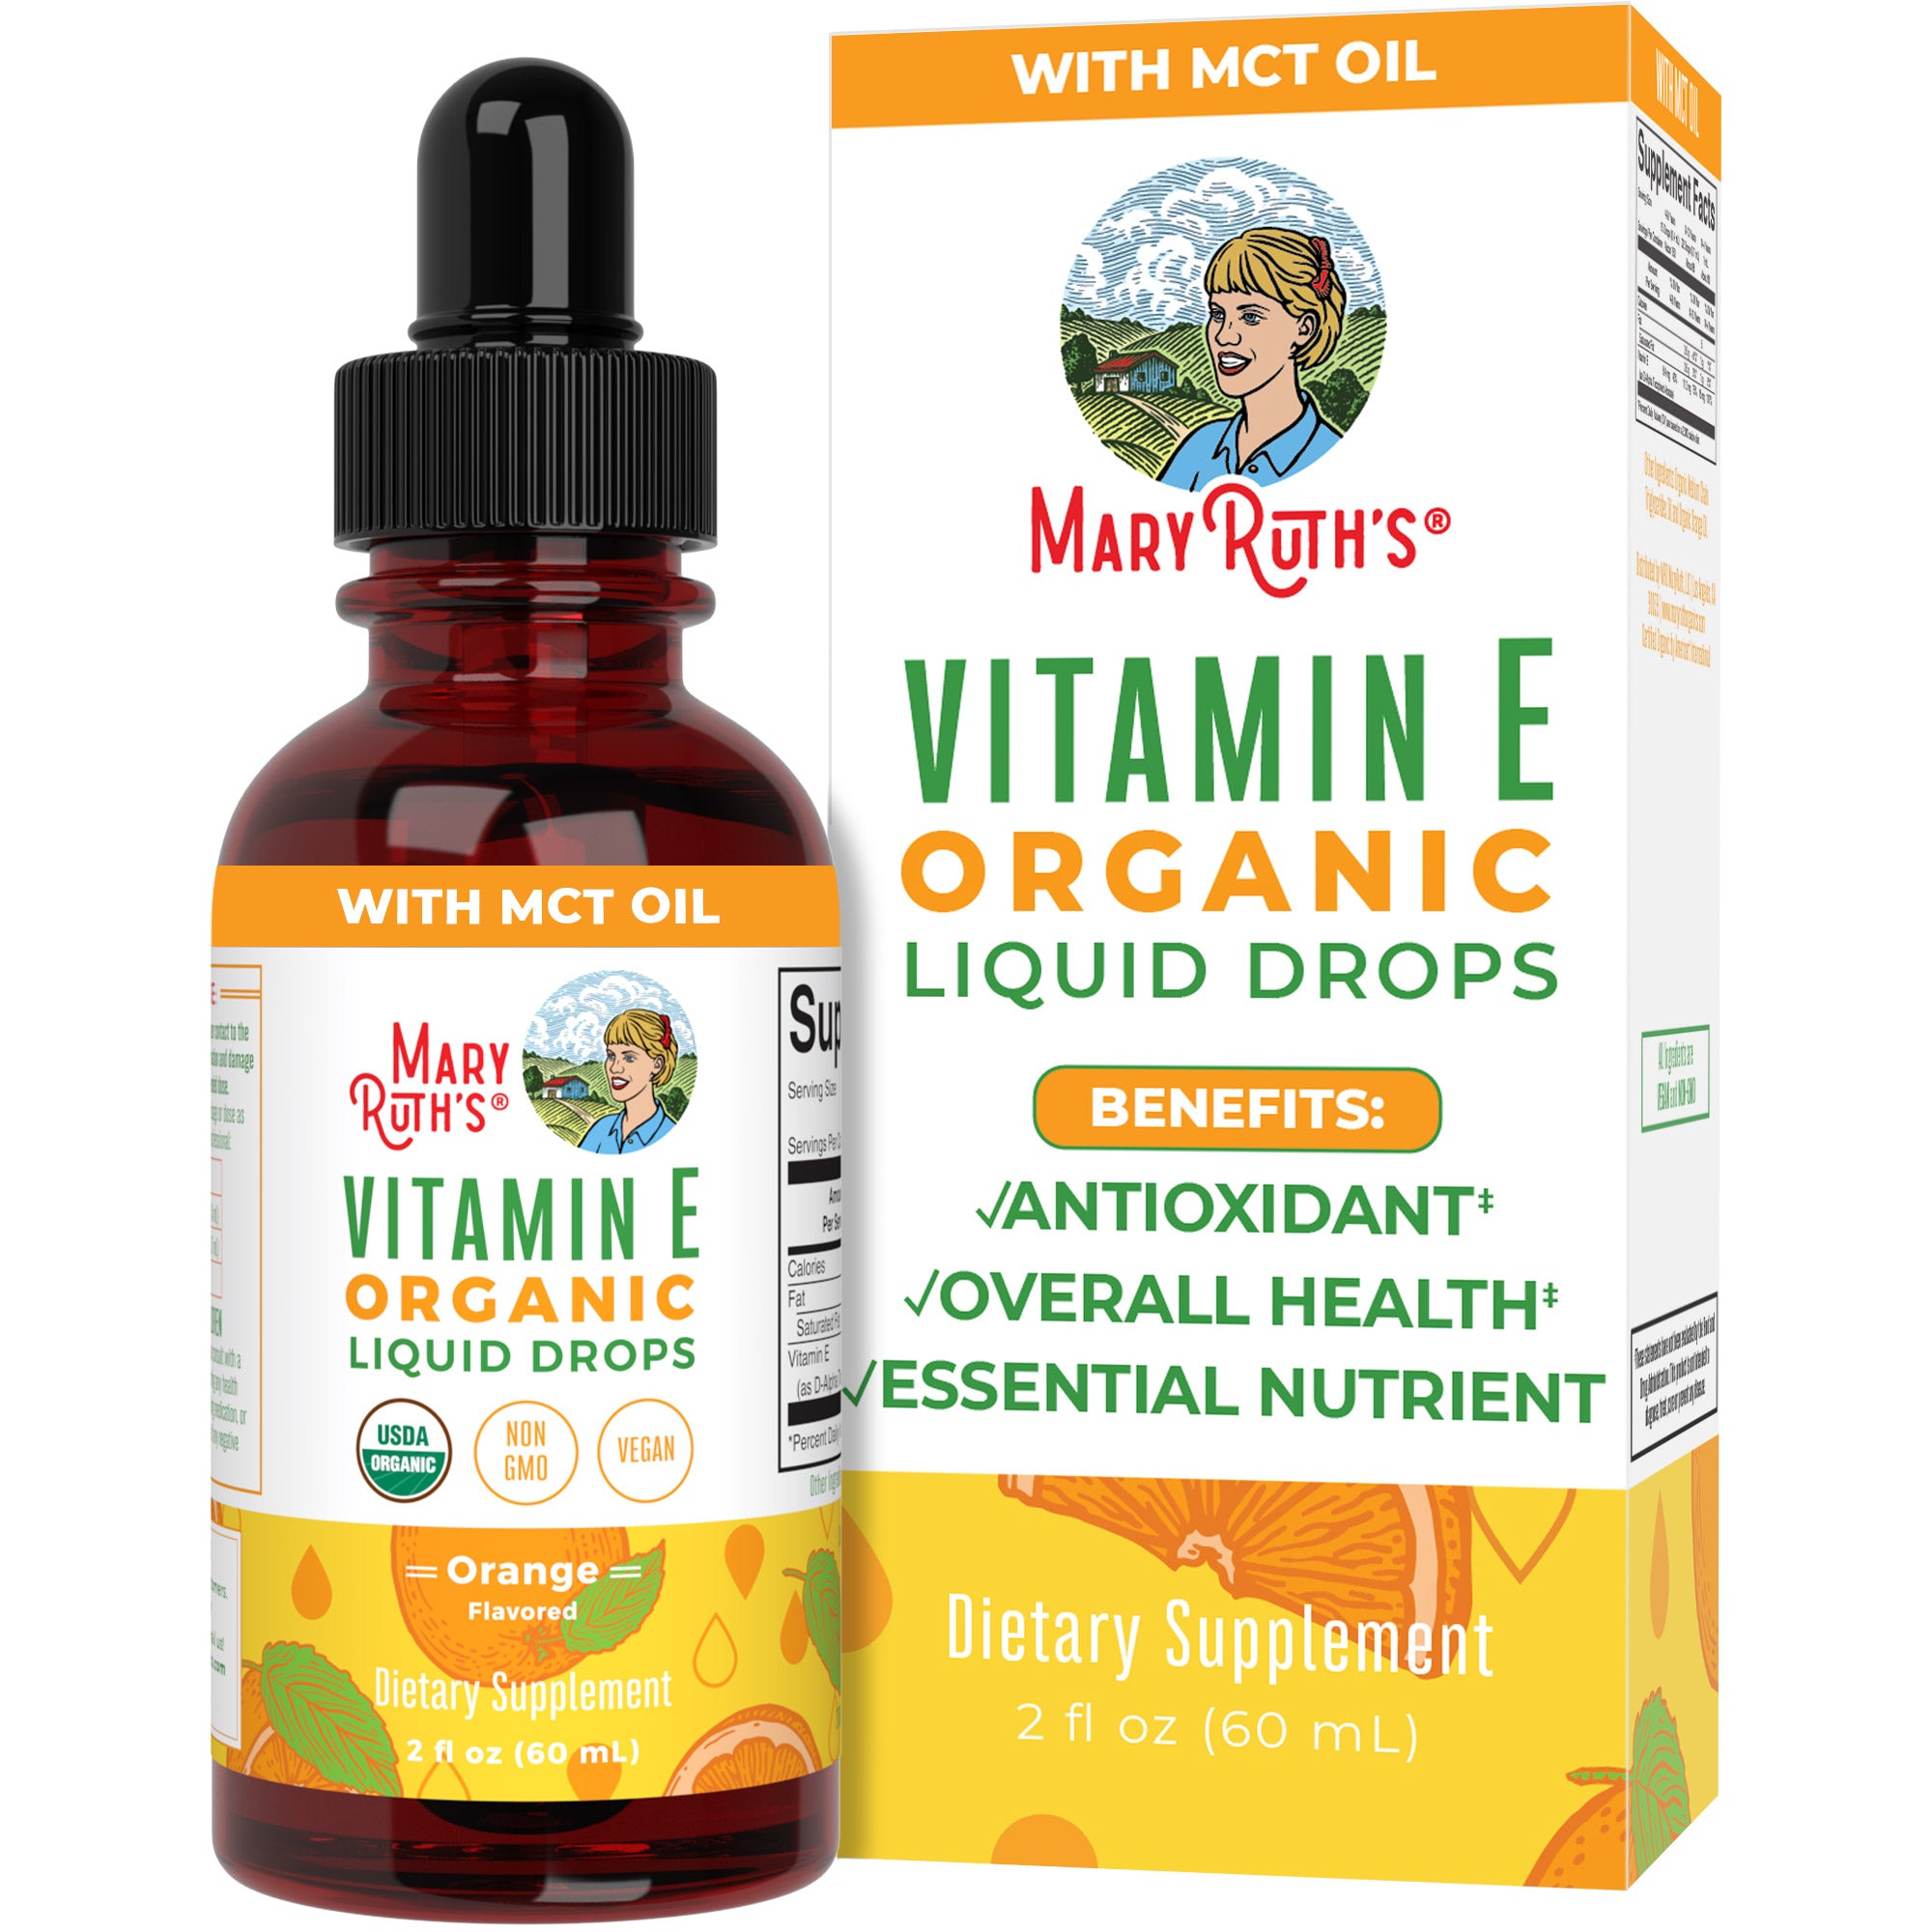 Vitamin E Organic Liquid Drops